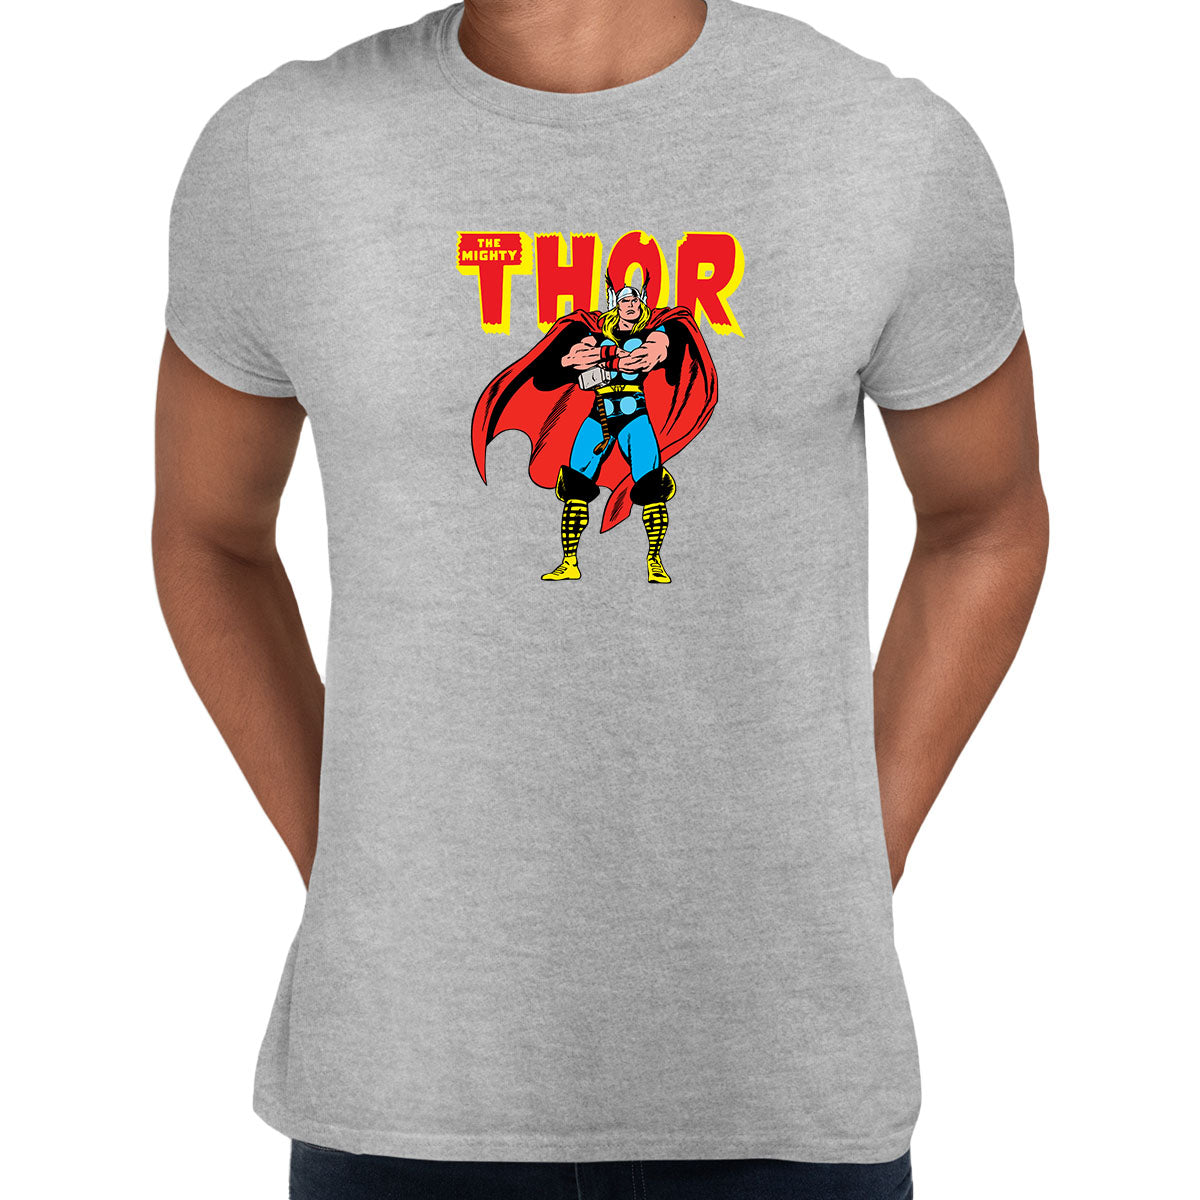 The Mighty Thor t-shirt Nostalgia avenger comic book - Kuzi Tees